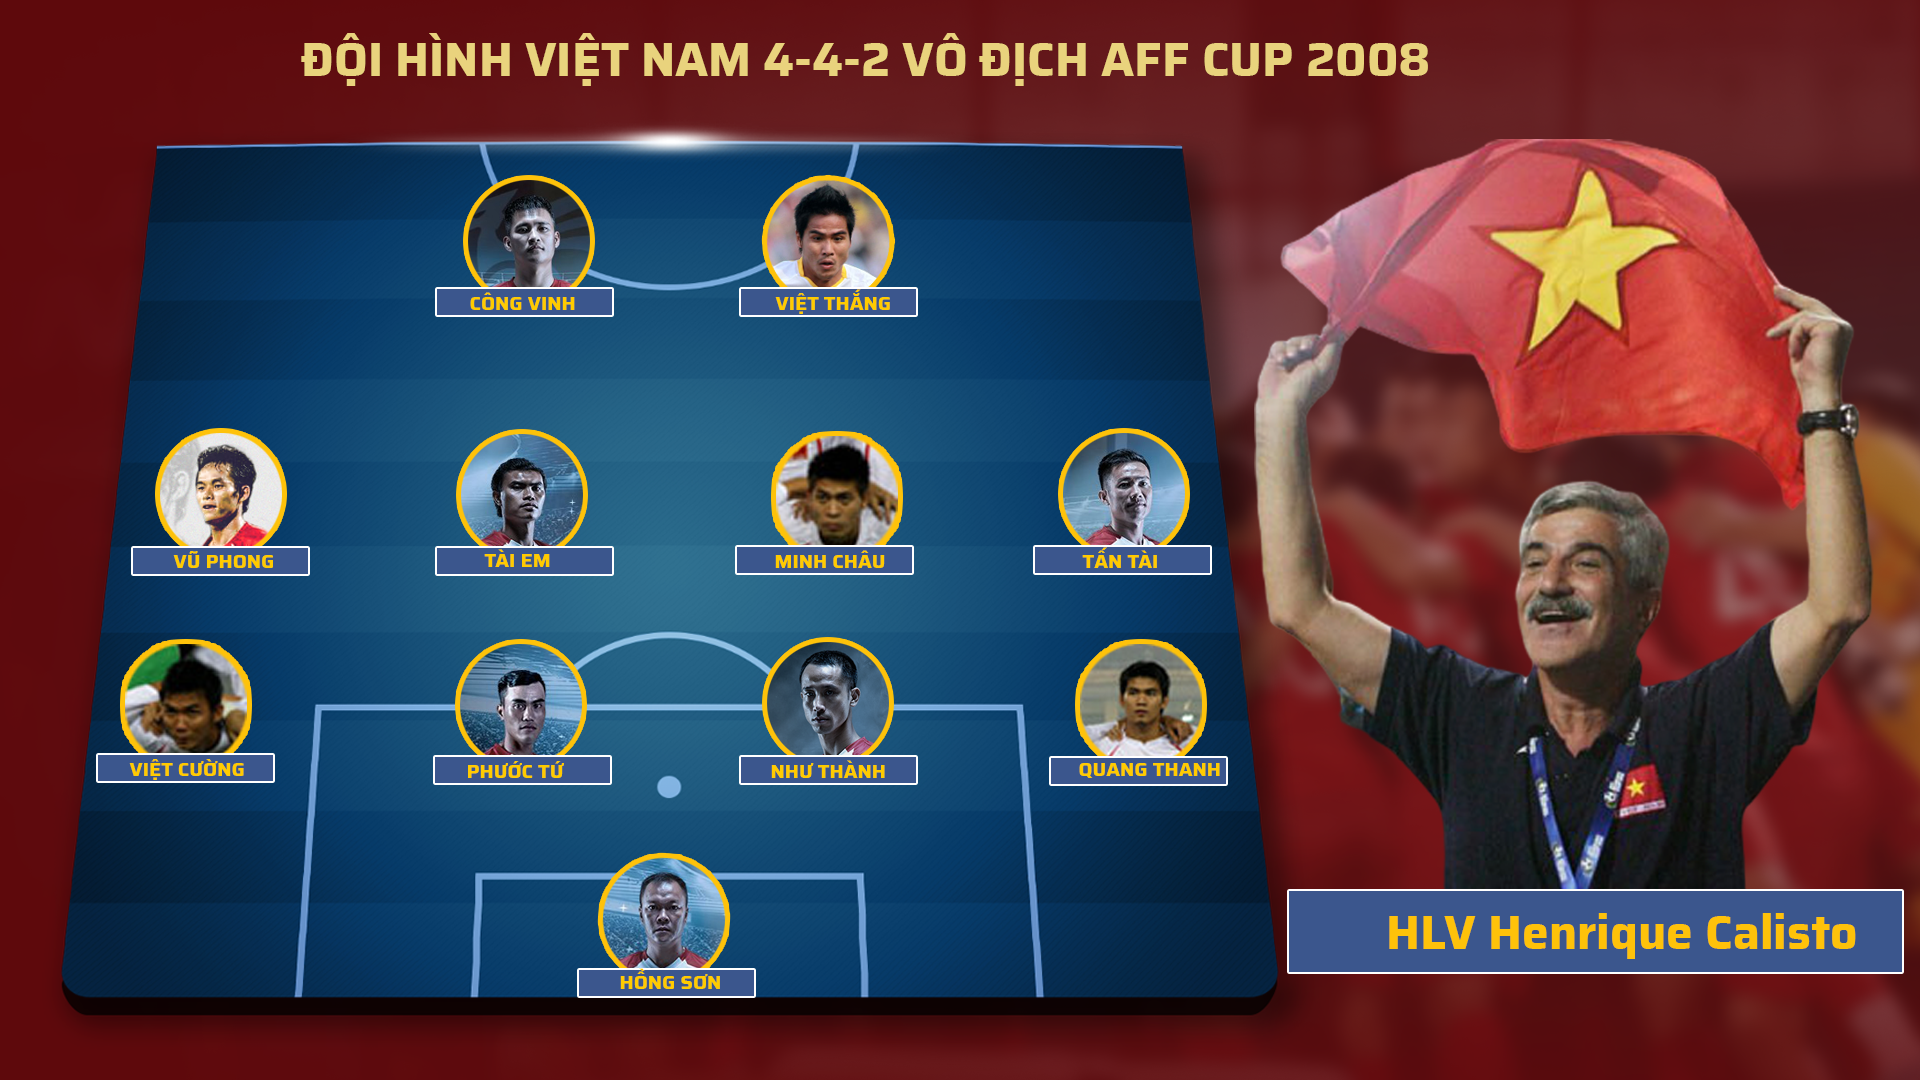 Đội hình xuất phát 4-4-2 trận chung kết lượt về AFF Cup 2008 gặp Thái Lan. Đồ họa: TK